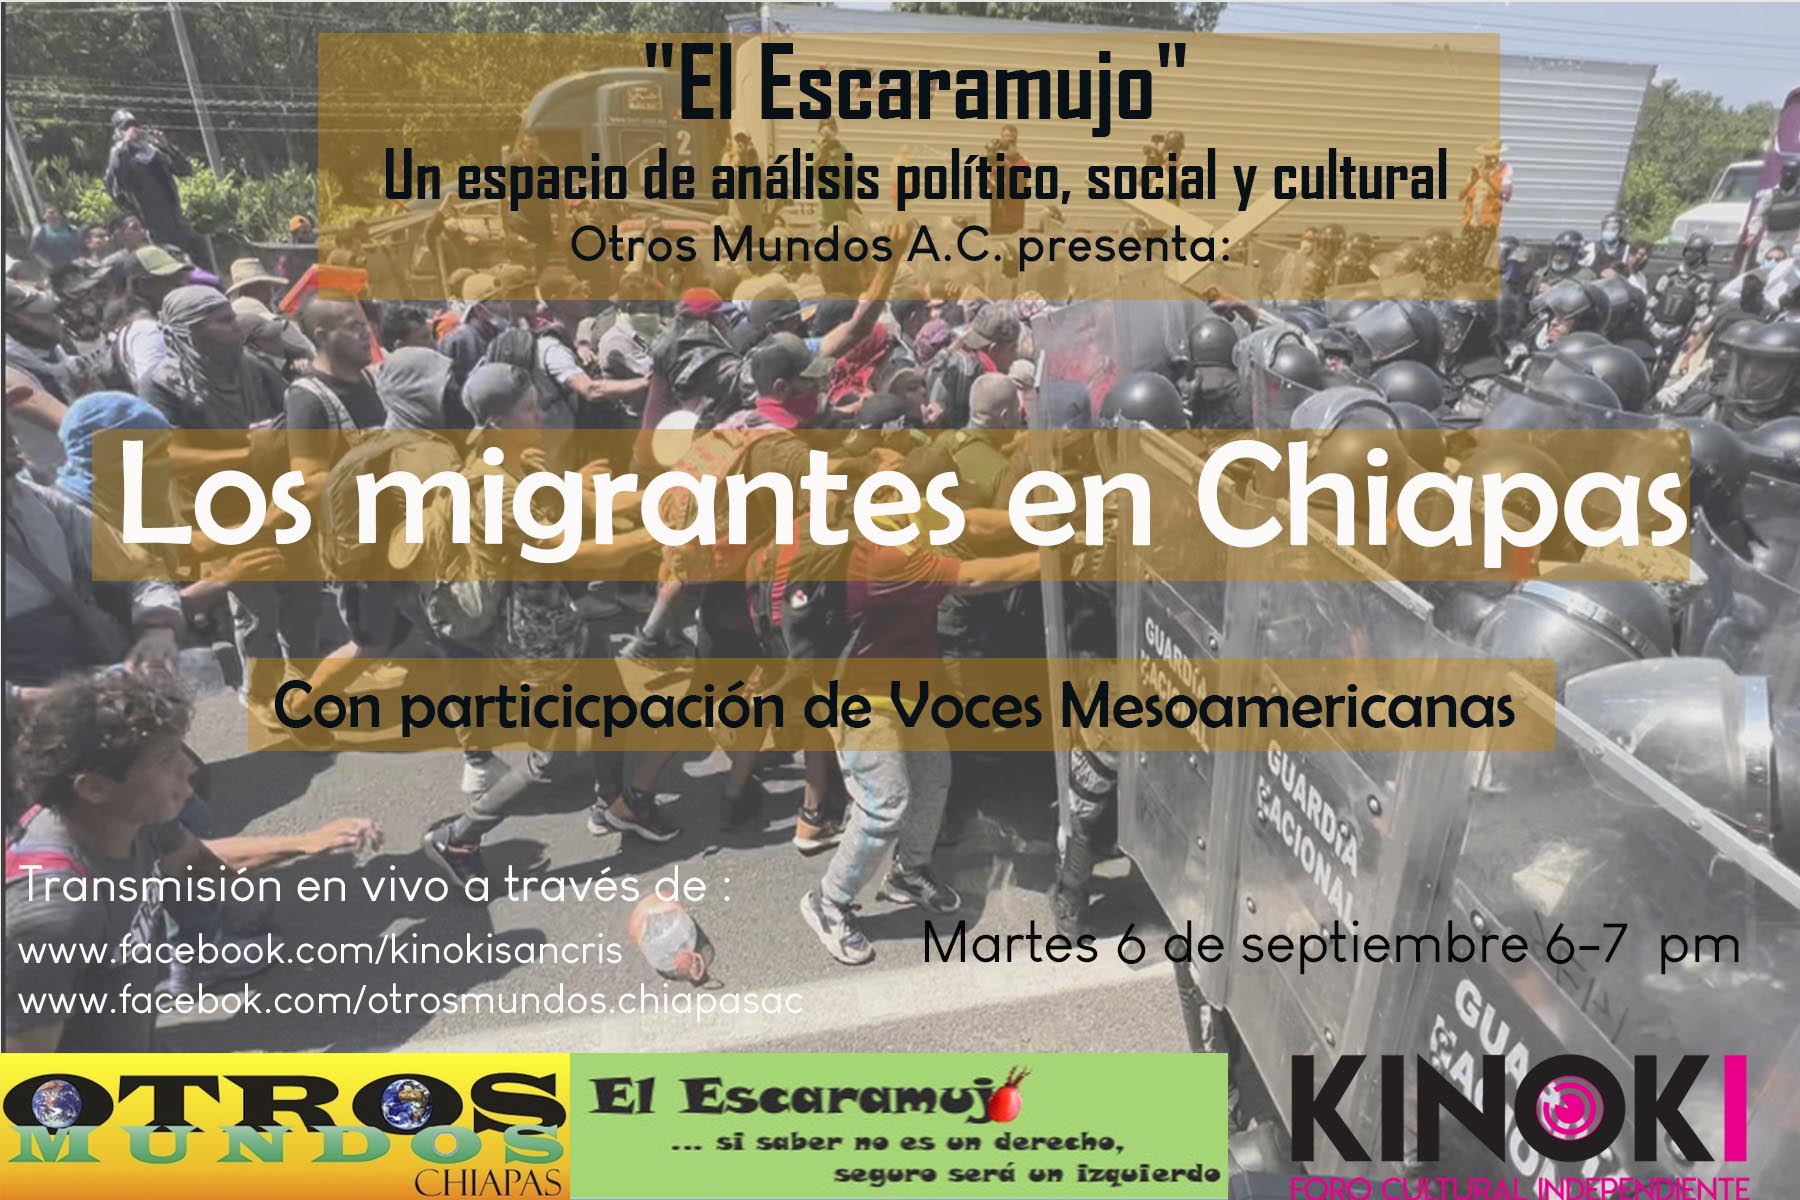 El Escaramujo en la Radio Martes 6 de septiembre 6 pm – Migrantes en Chiapas